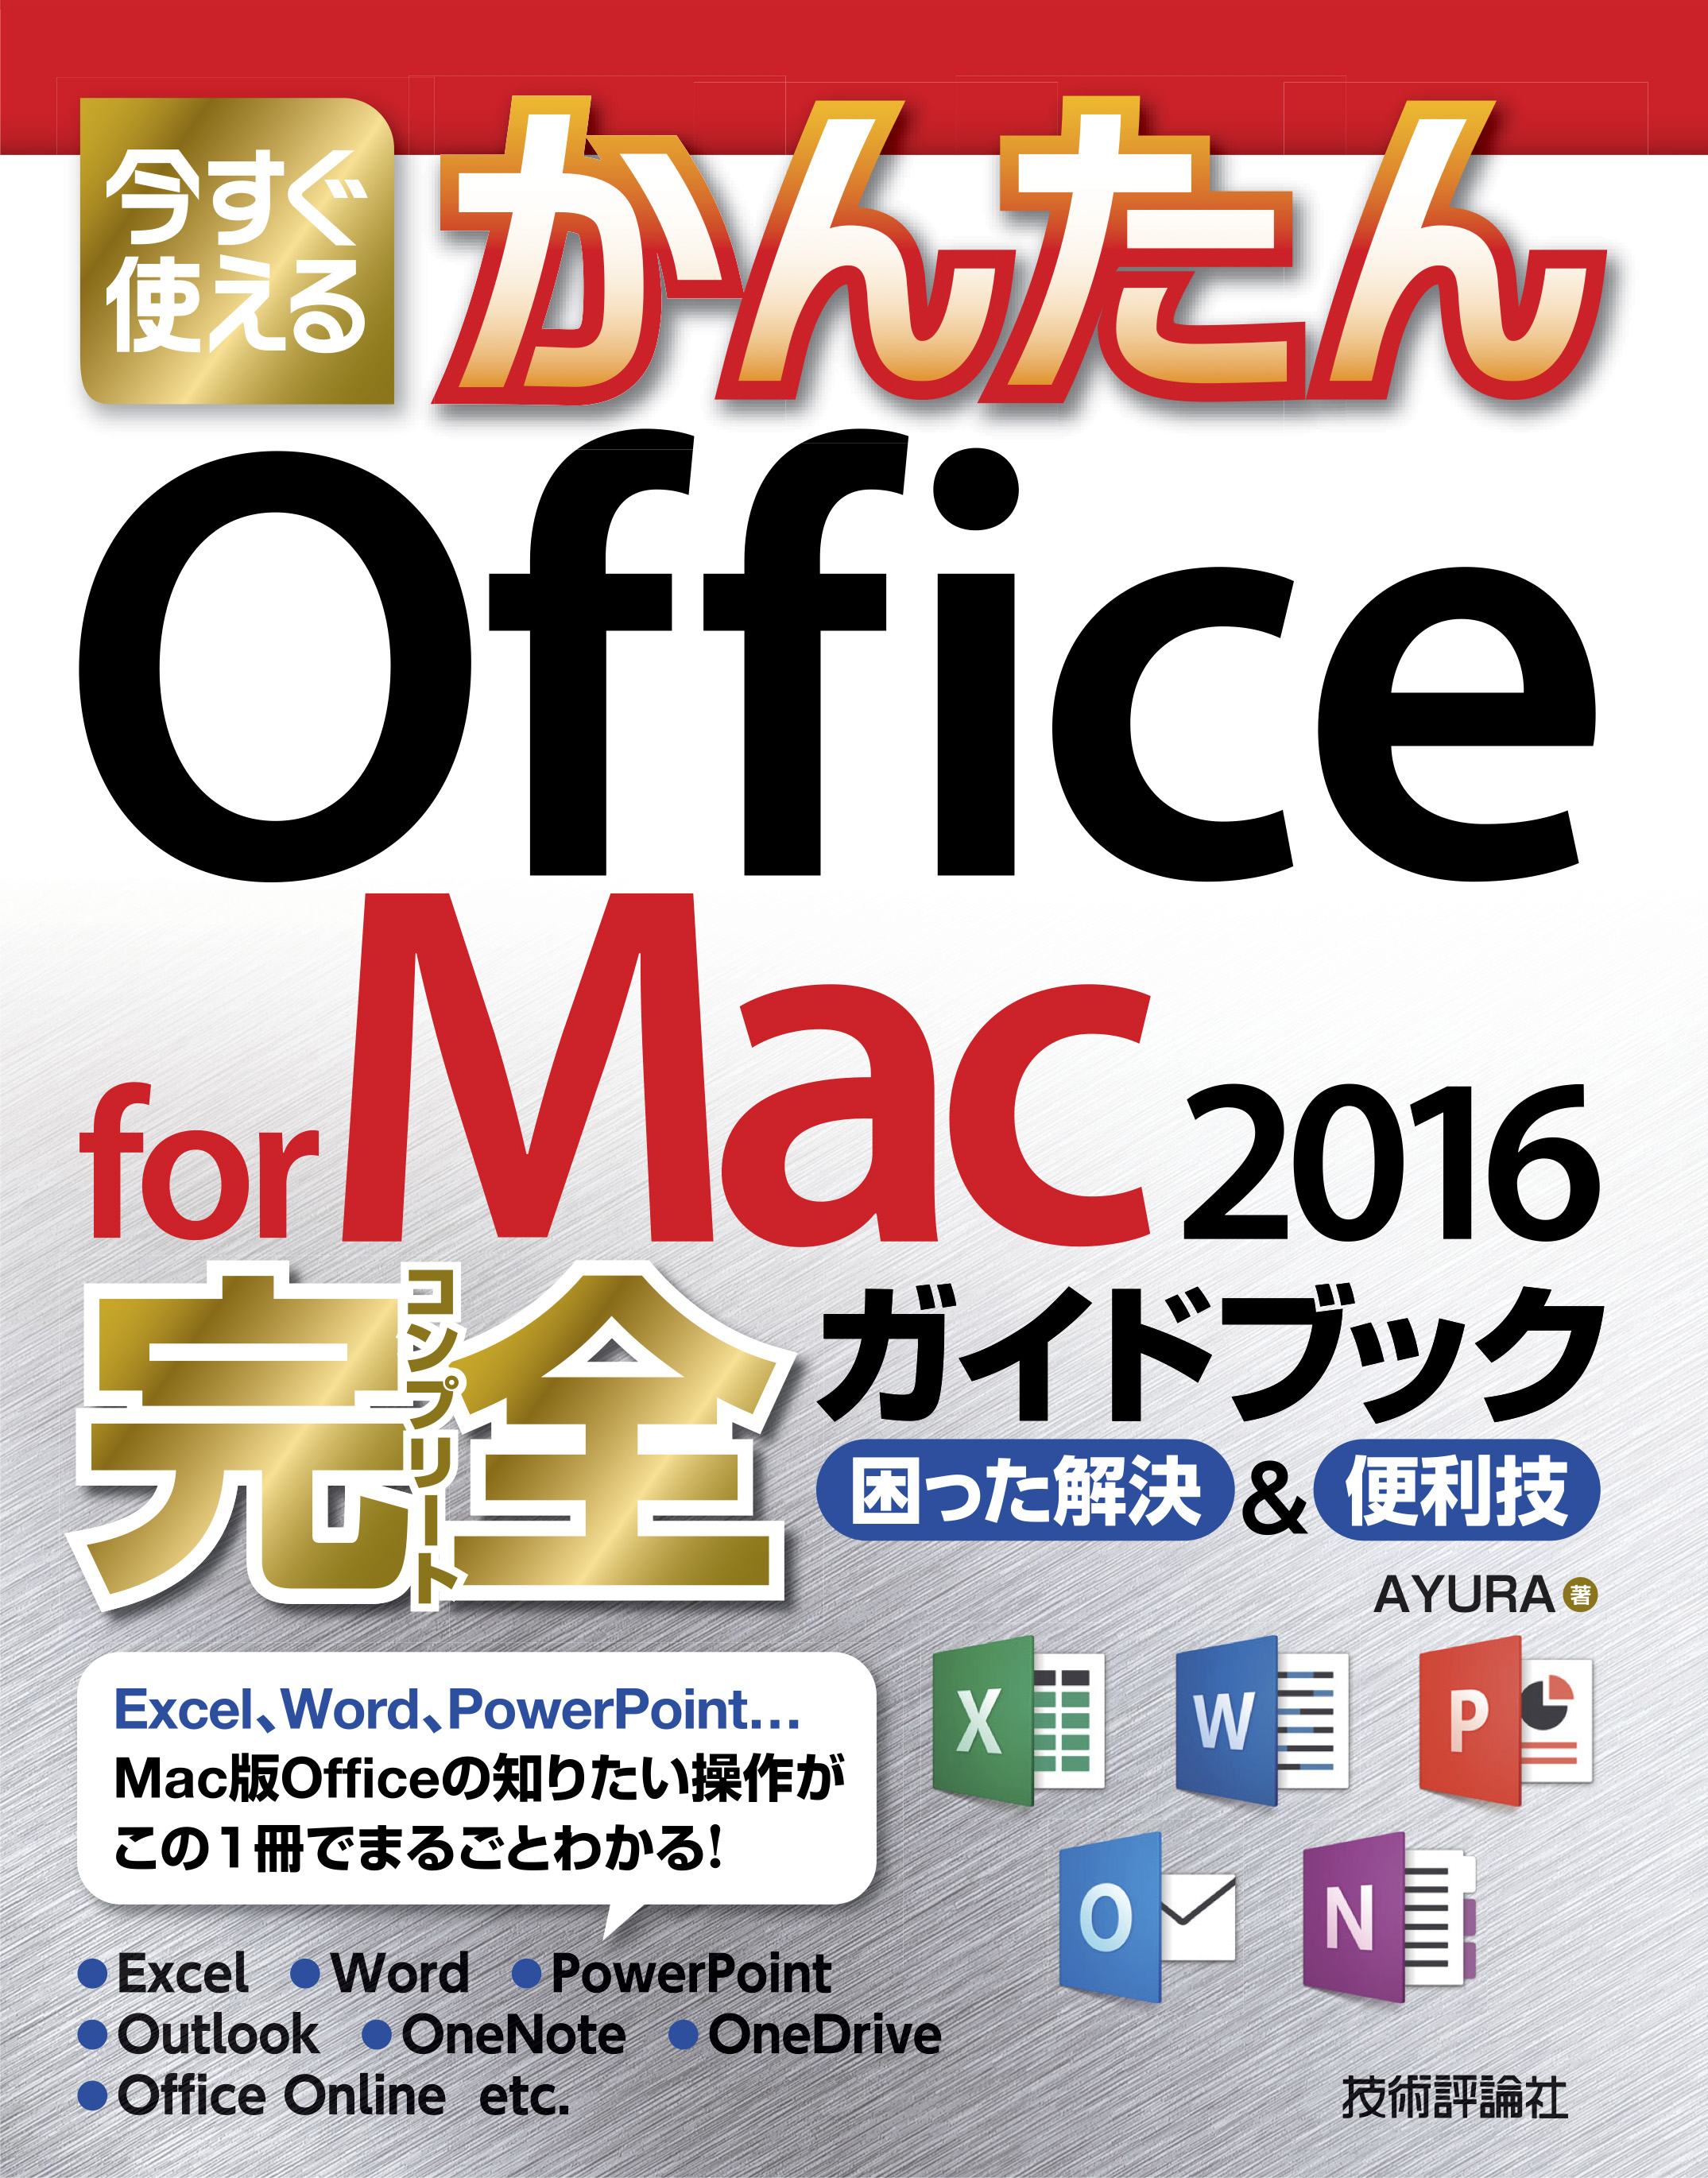 今すぐ使えるかんたん Office for Mac 2016完全ガイドブック - AYURA